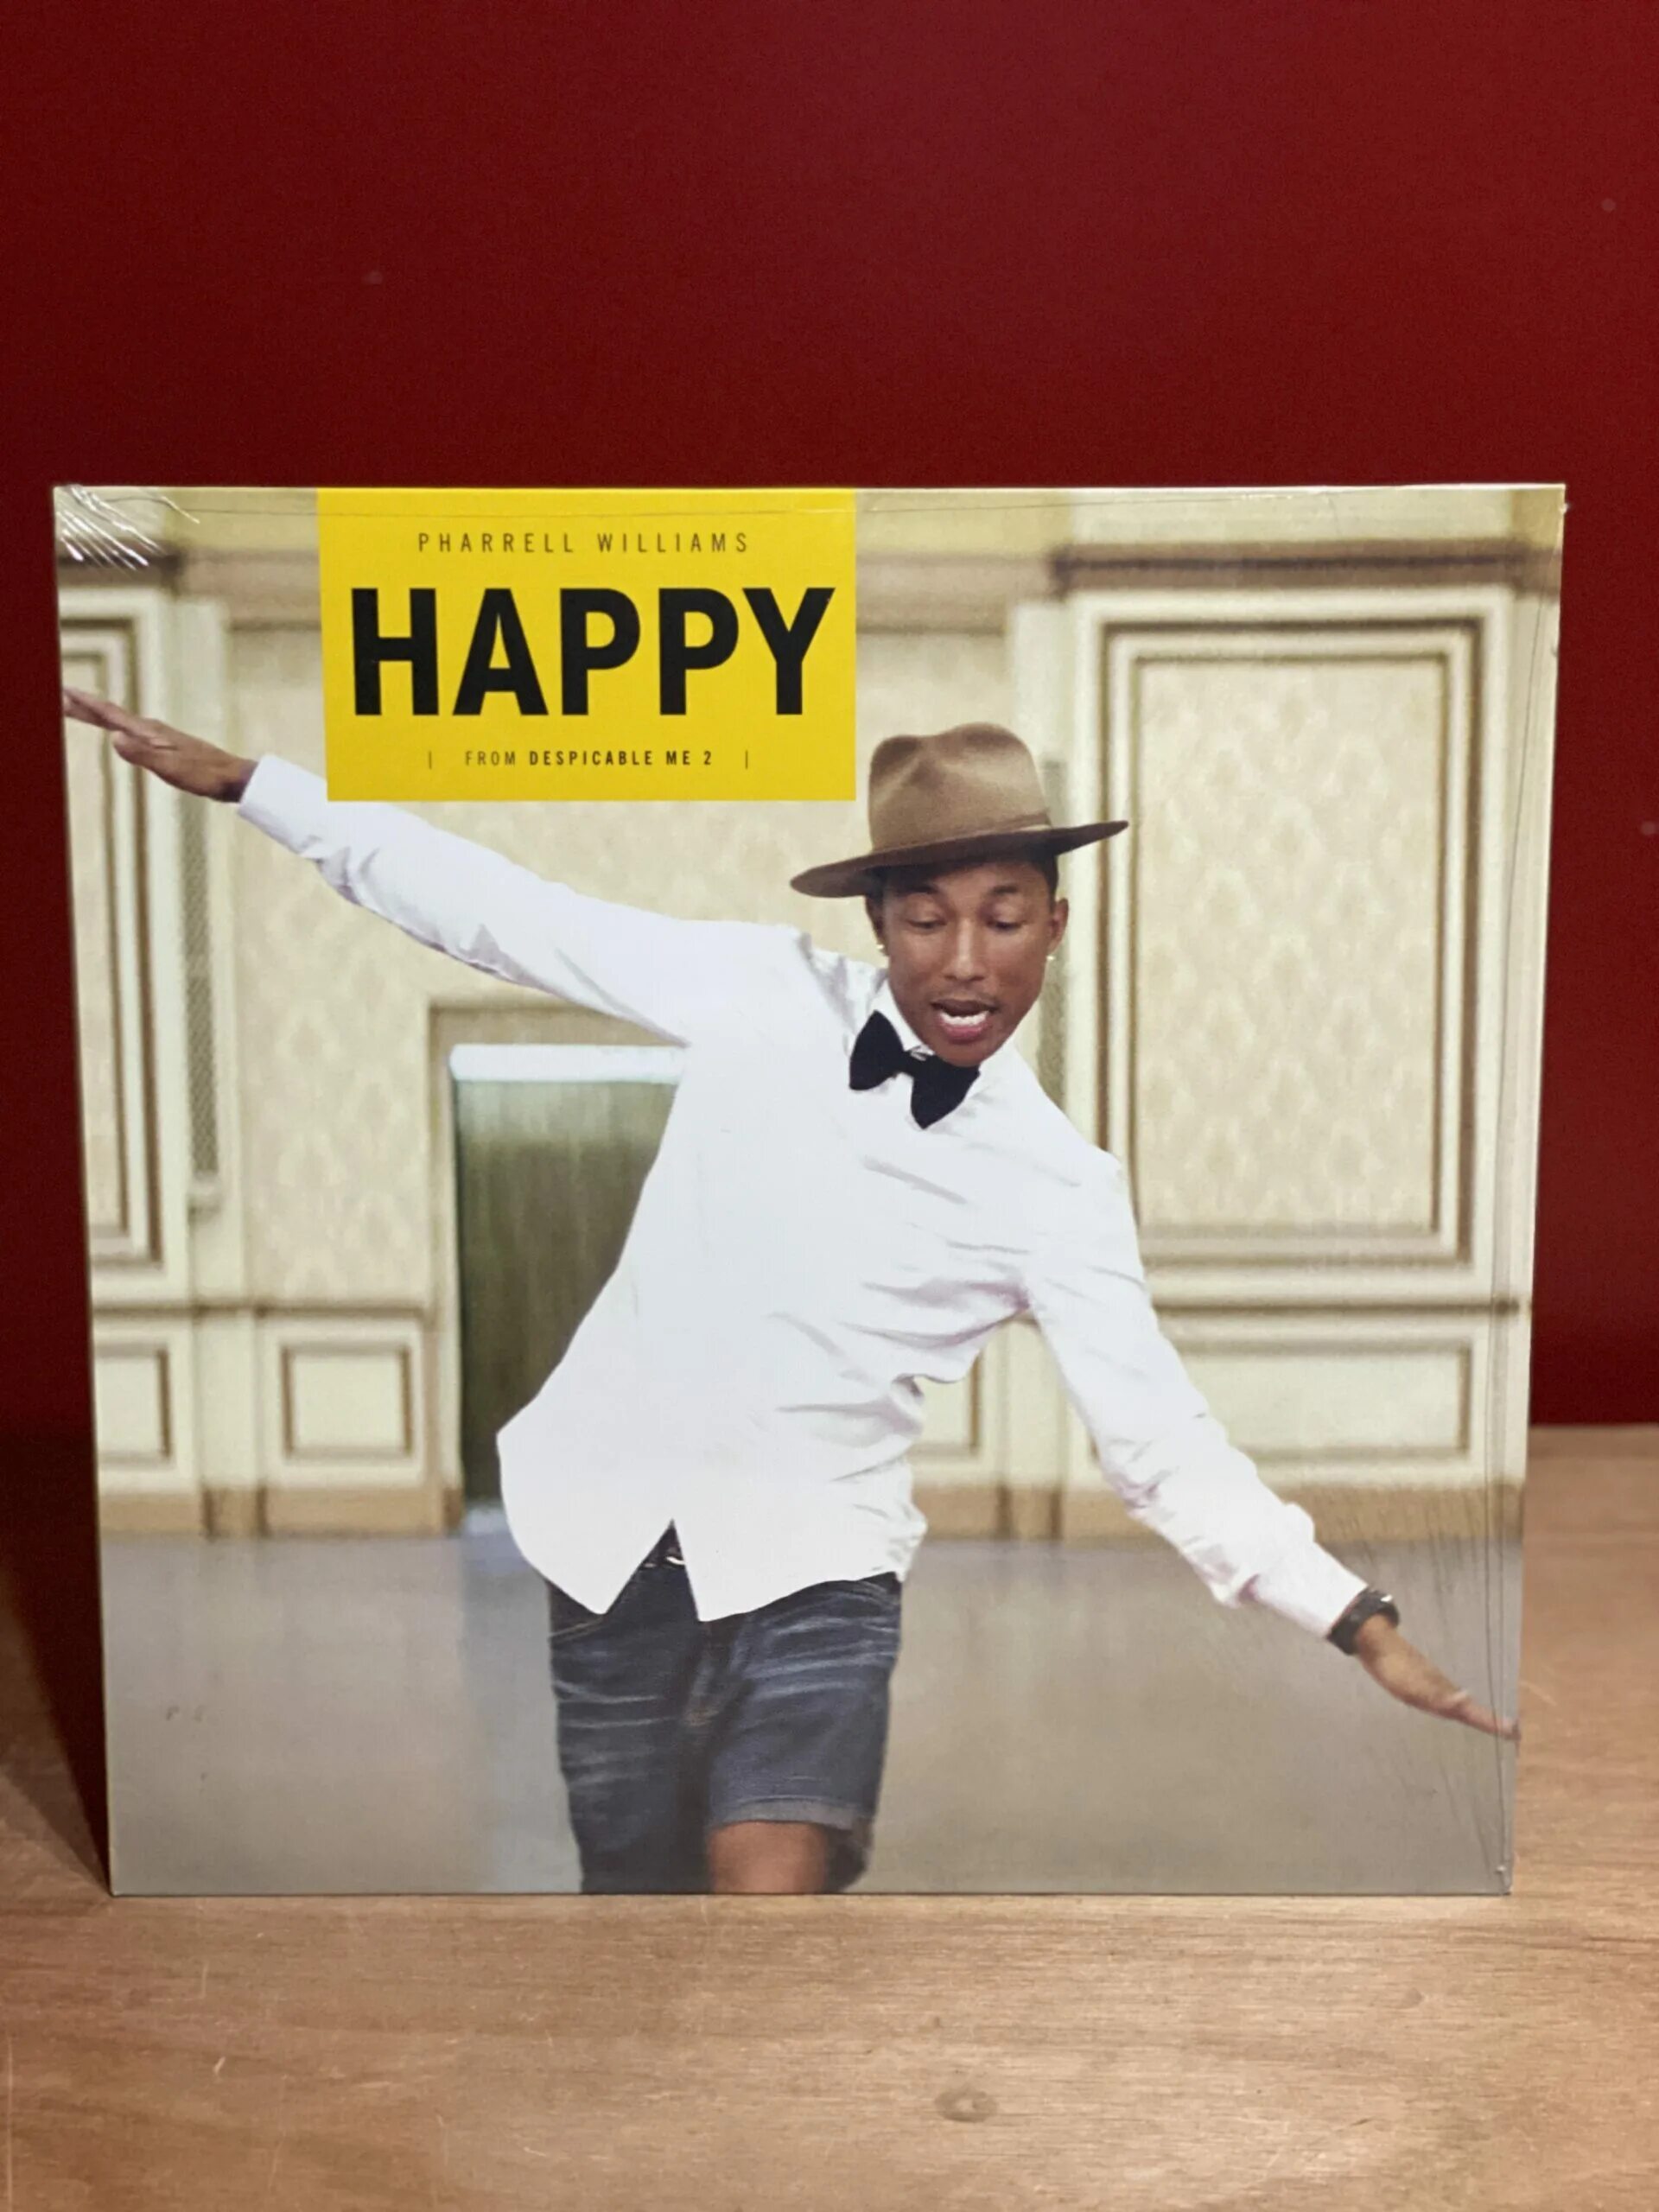 Песни happy williams. Happy Фаррелл Уильямс. Pharrell Williams Happy обложка. Happy from Despicable me 2 Pharrell Williams. Хэппи песня Уильямс Фаррелл.